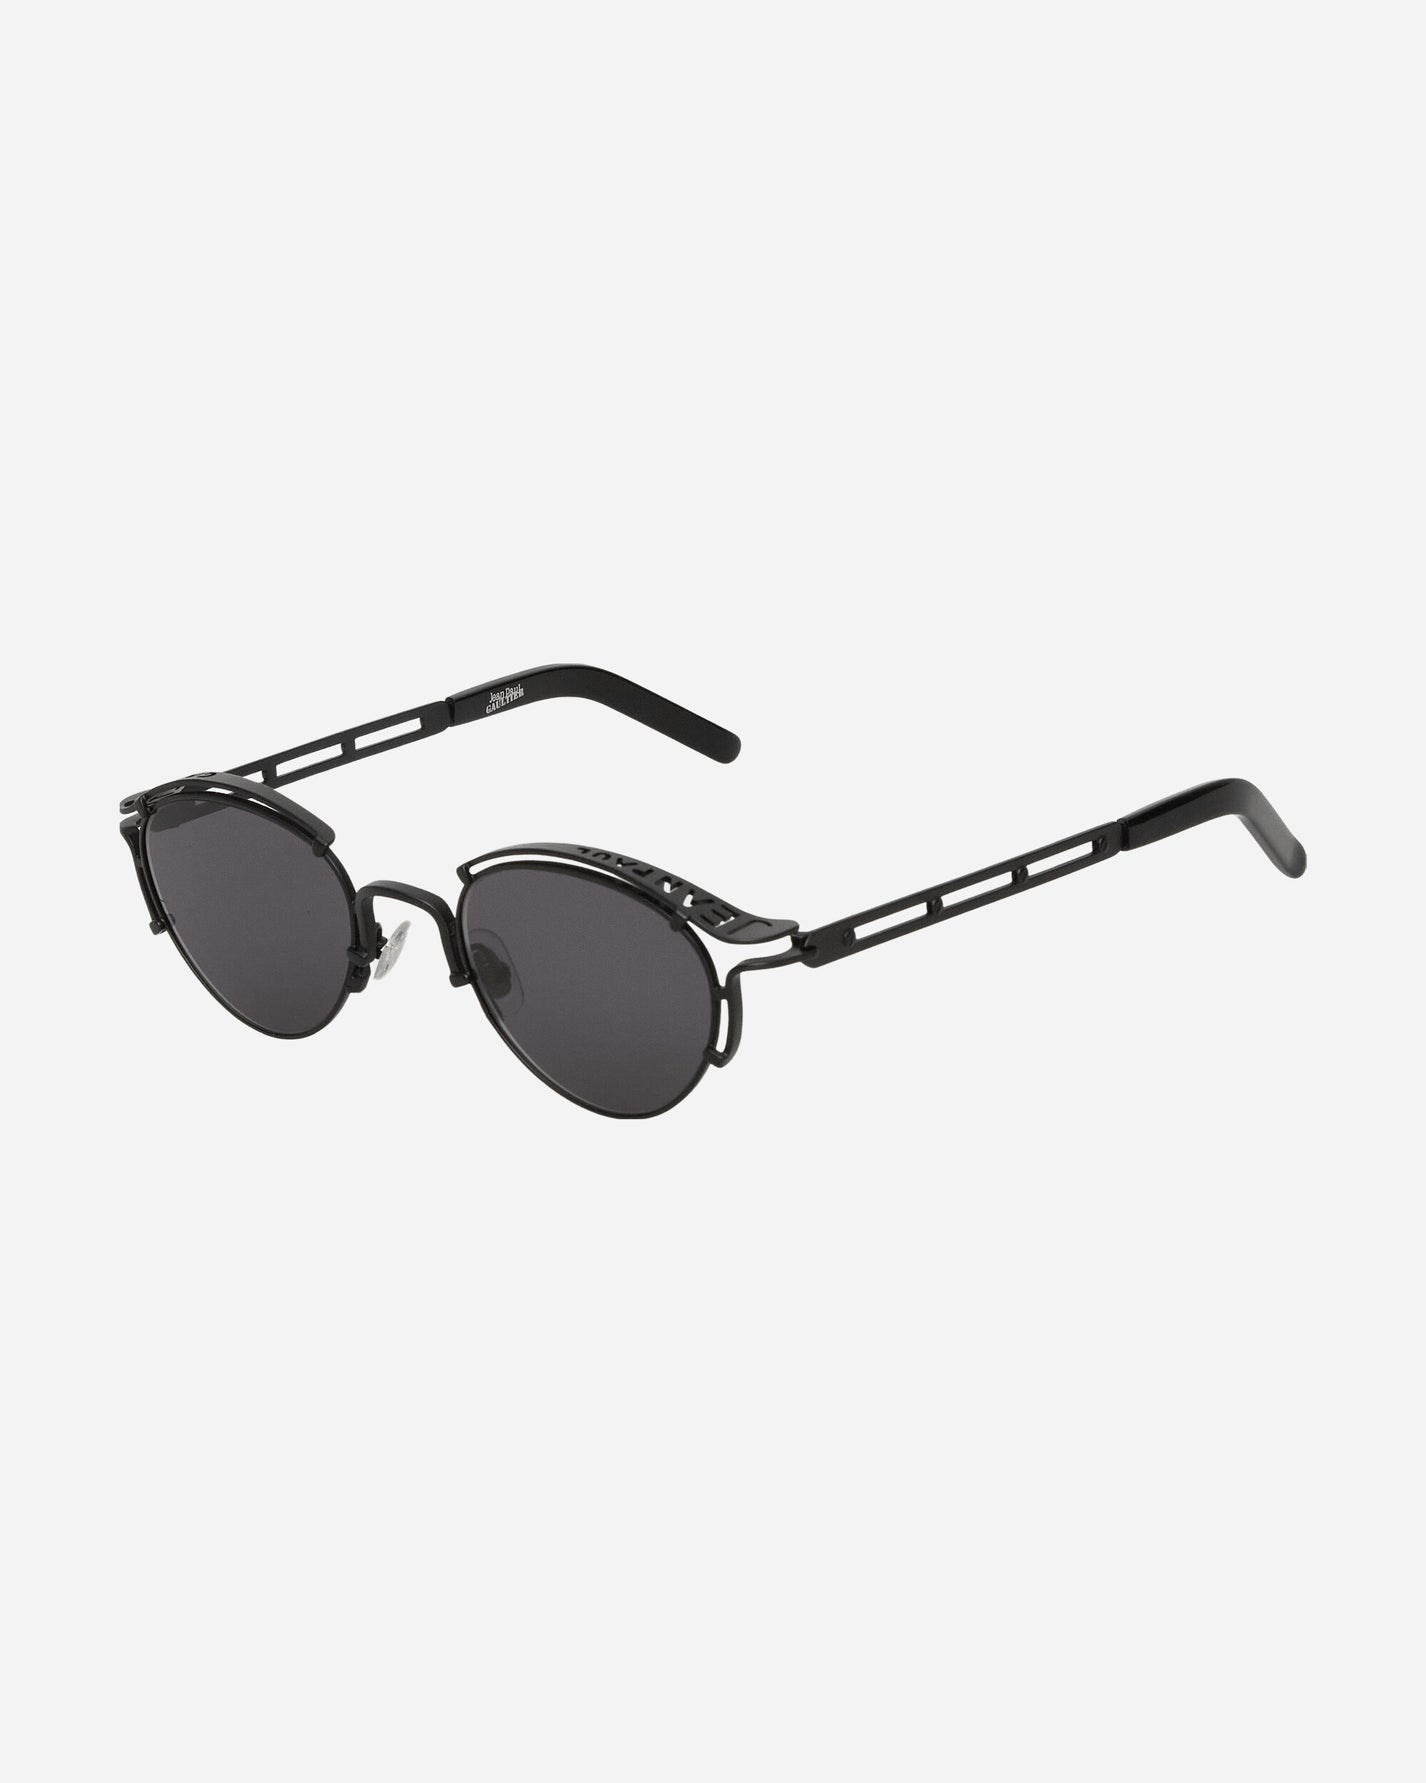 Jean Paul Gaultier Wmns Lunettes Sourcil Black Eyewear Sunglasses LU009-X056 00